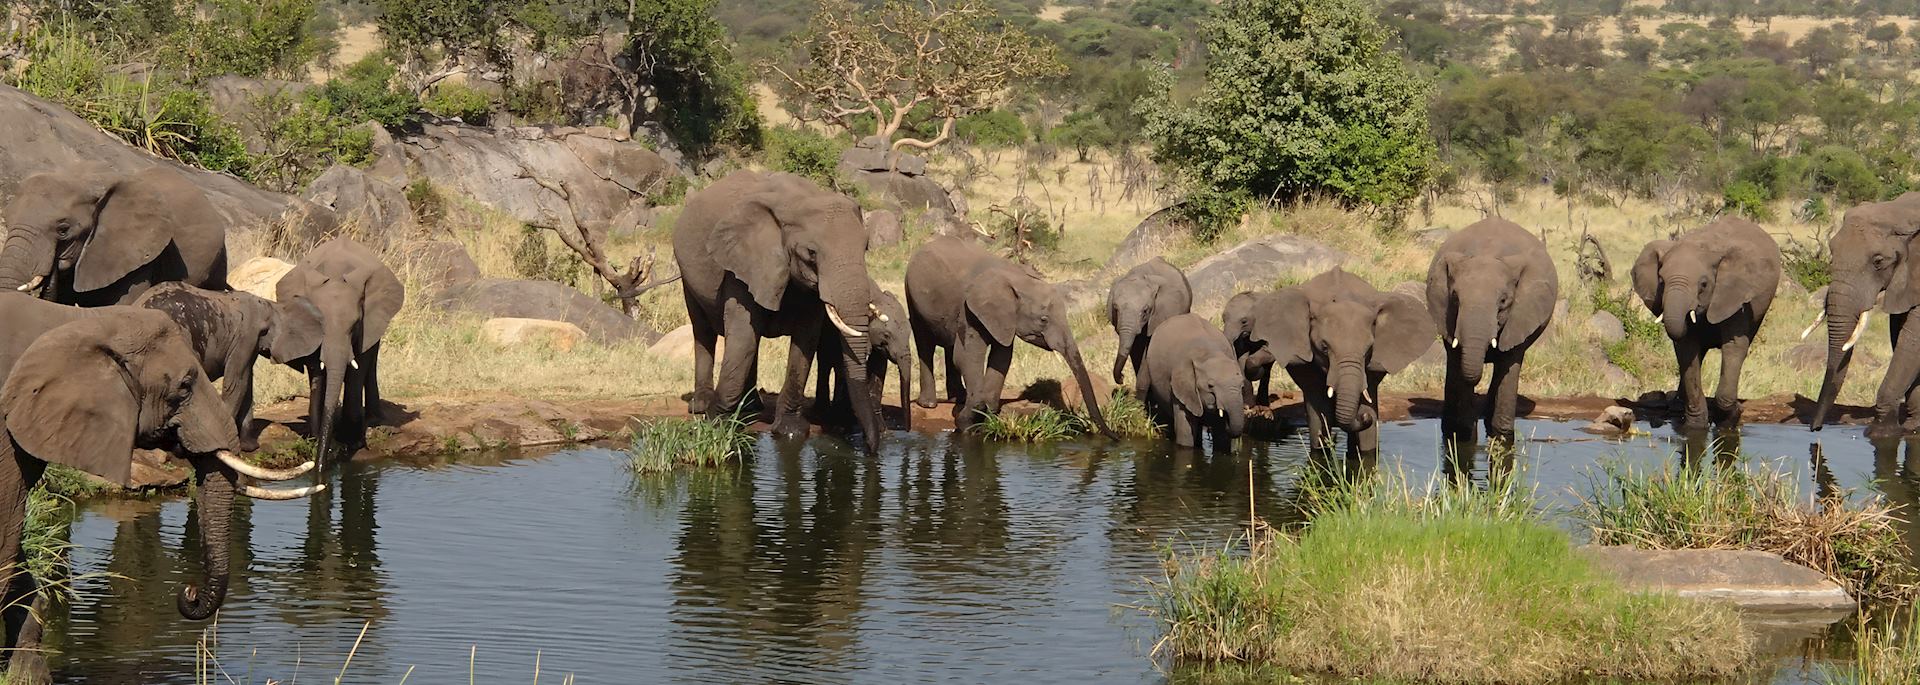 Elephant drinking, Serengeti National Park